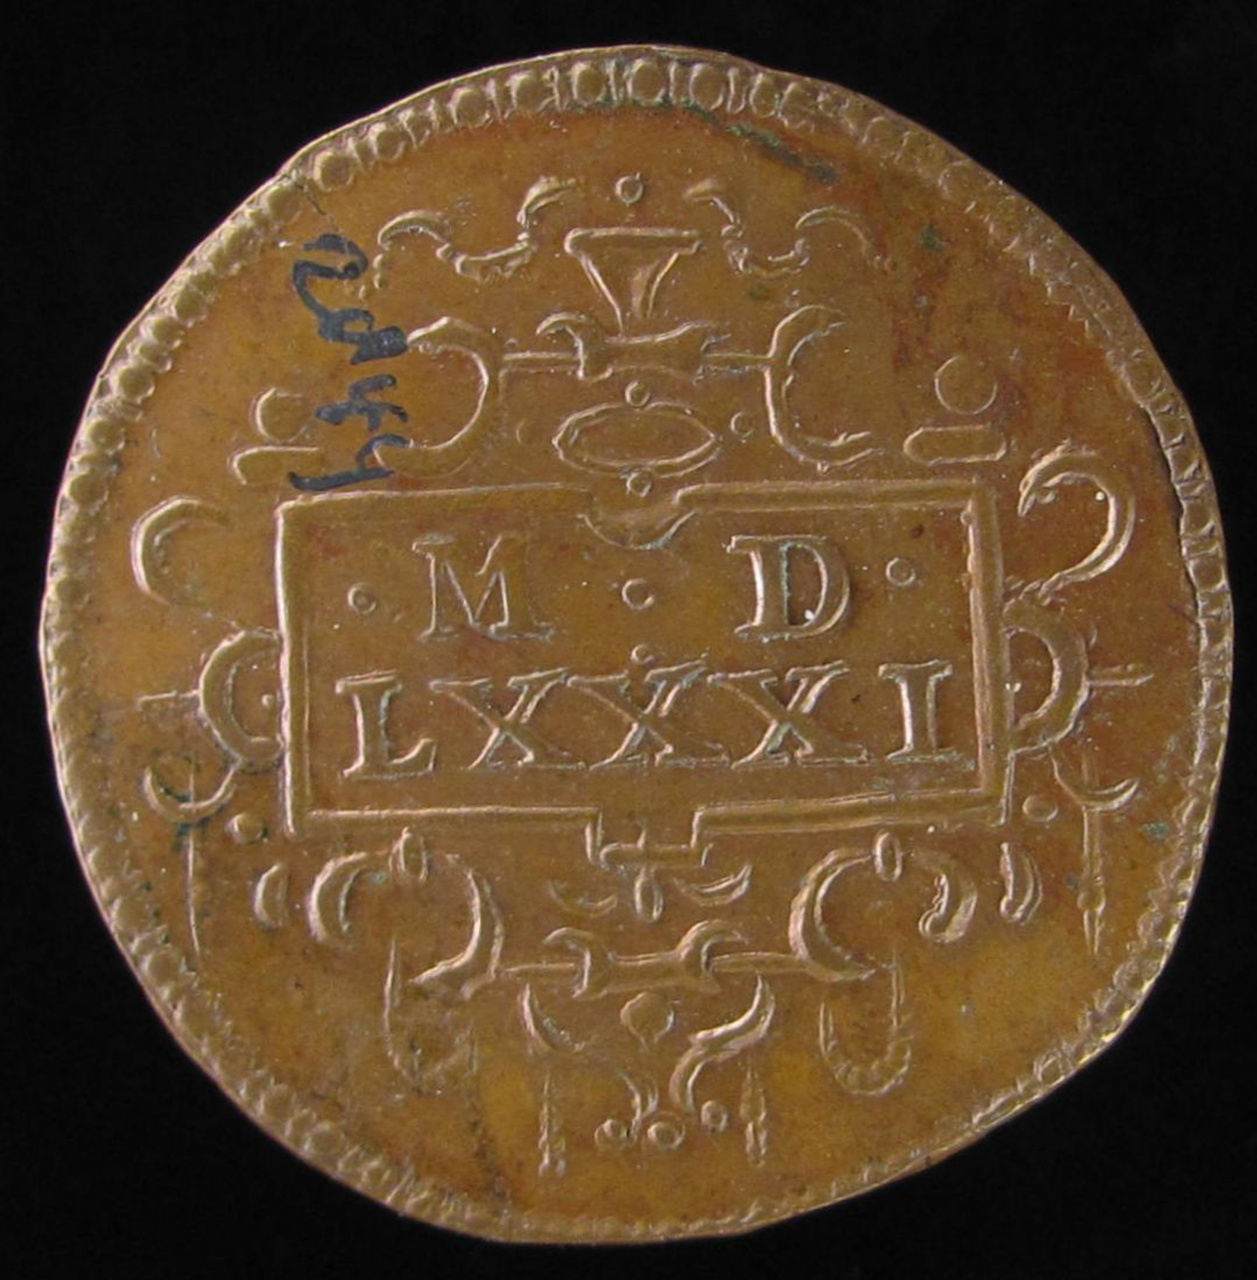 Legpenning van de rekenkamer, 1581